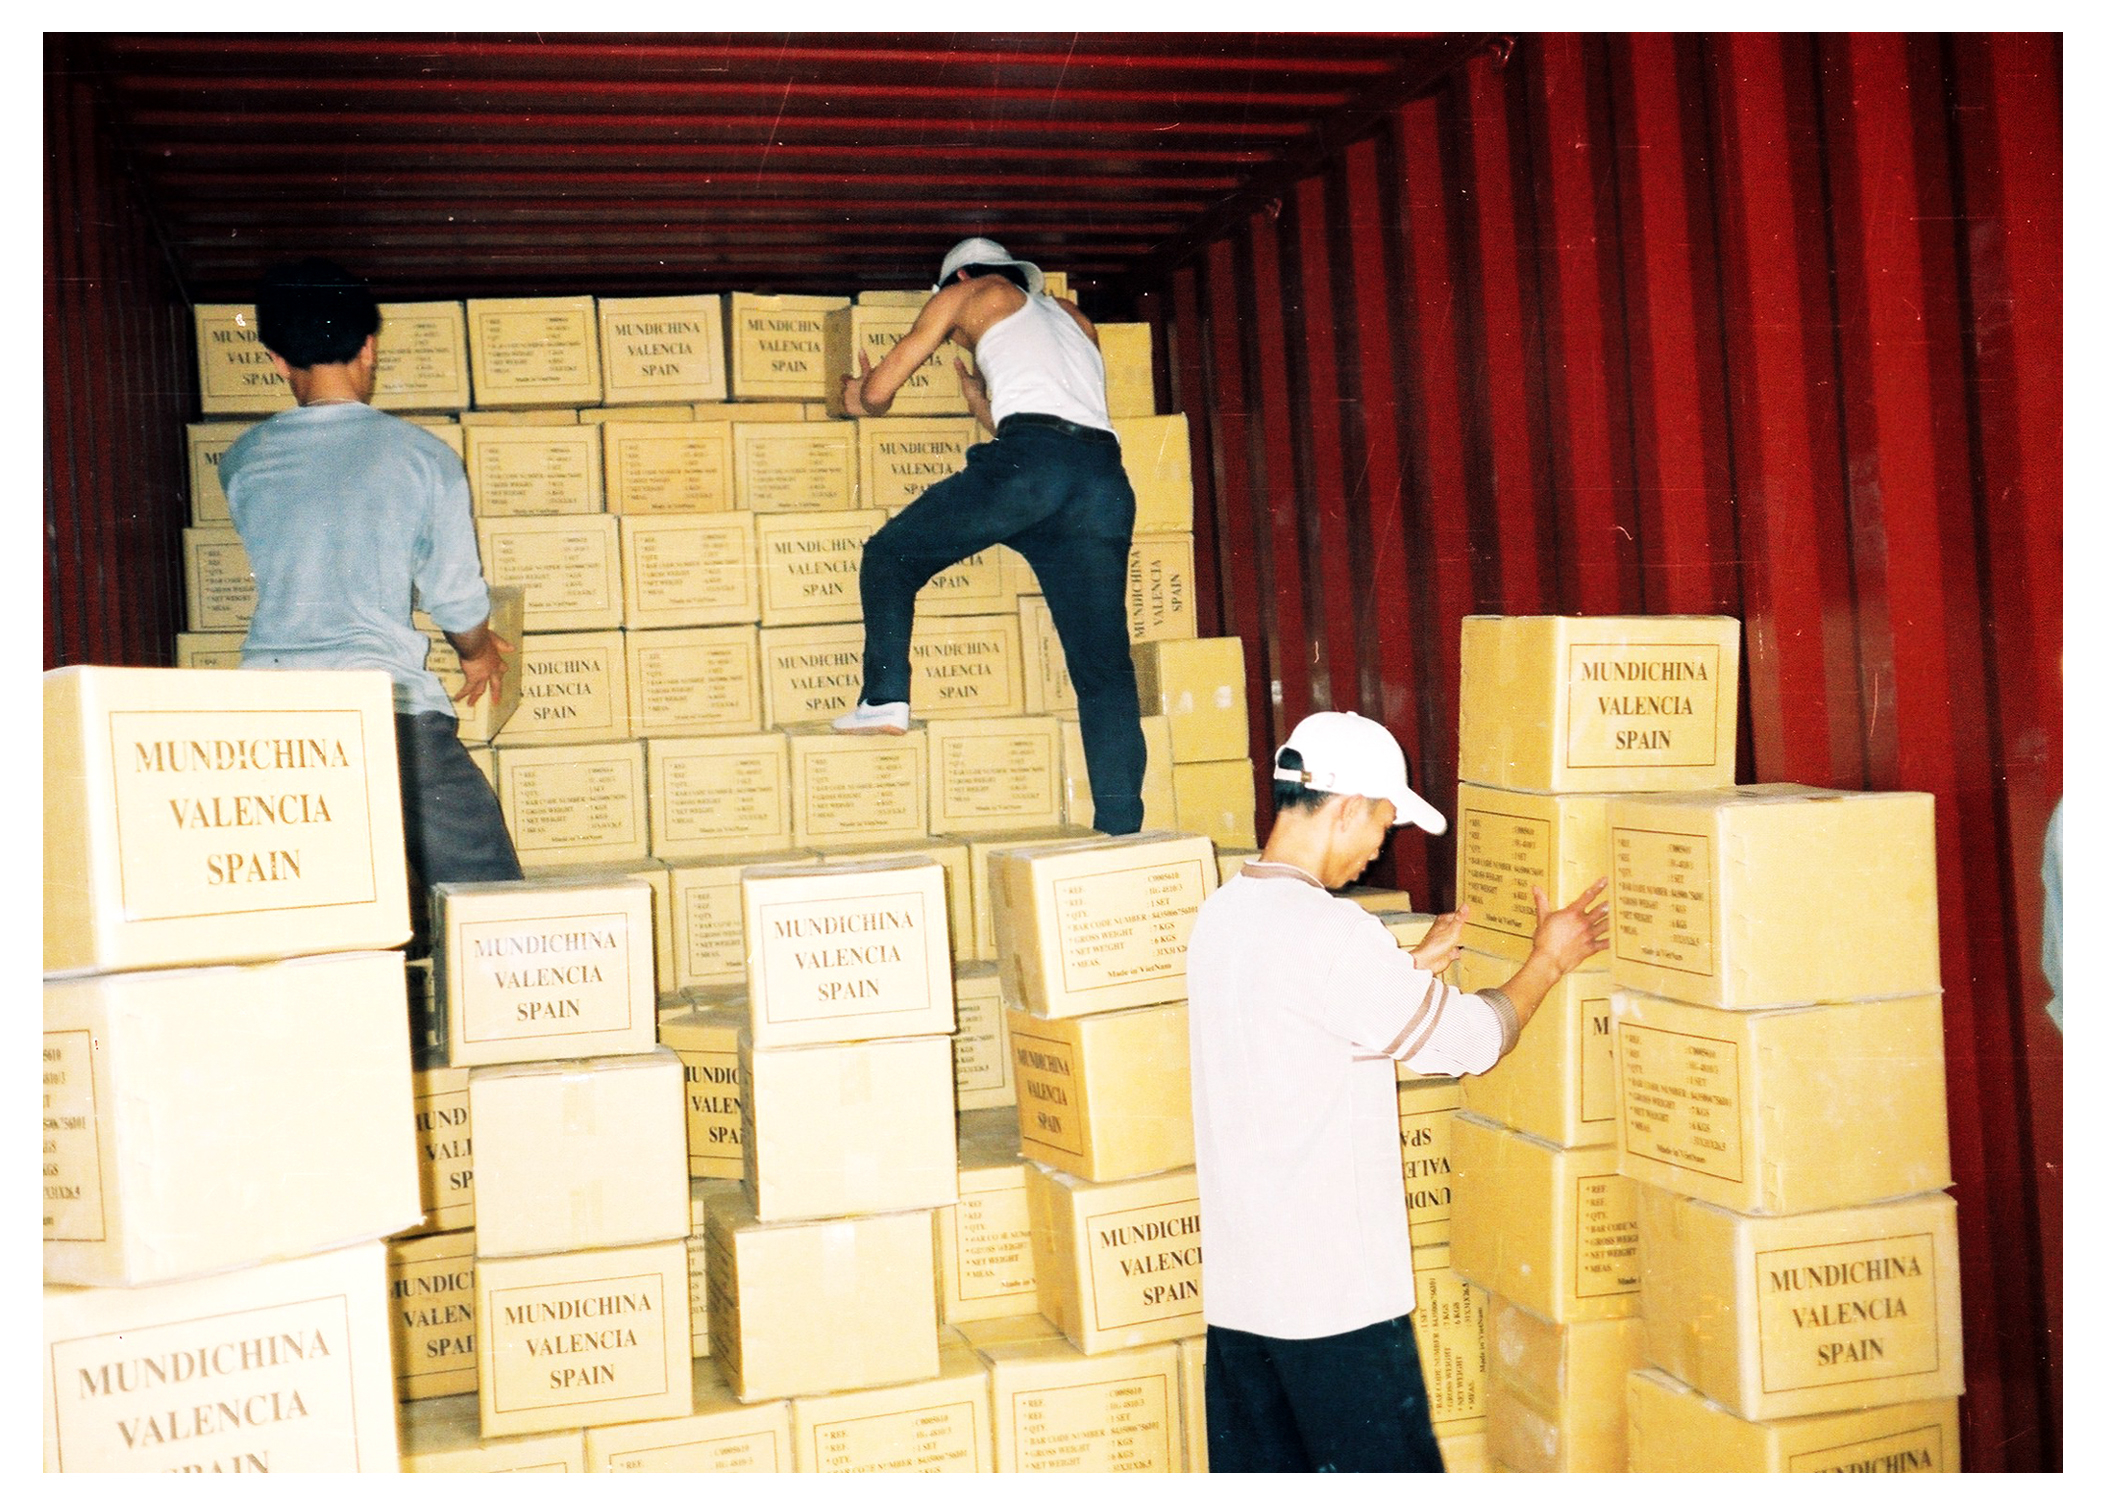 Tháng 5/2003, Công ty gốm Chu Đậu đã xuất khẩu lô hàng đầu tiên sang thị trường Tây Ban Nha.